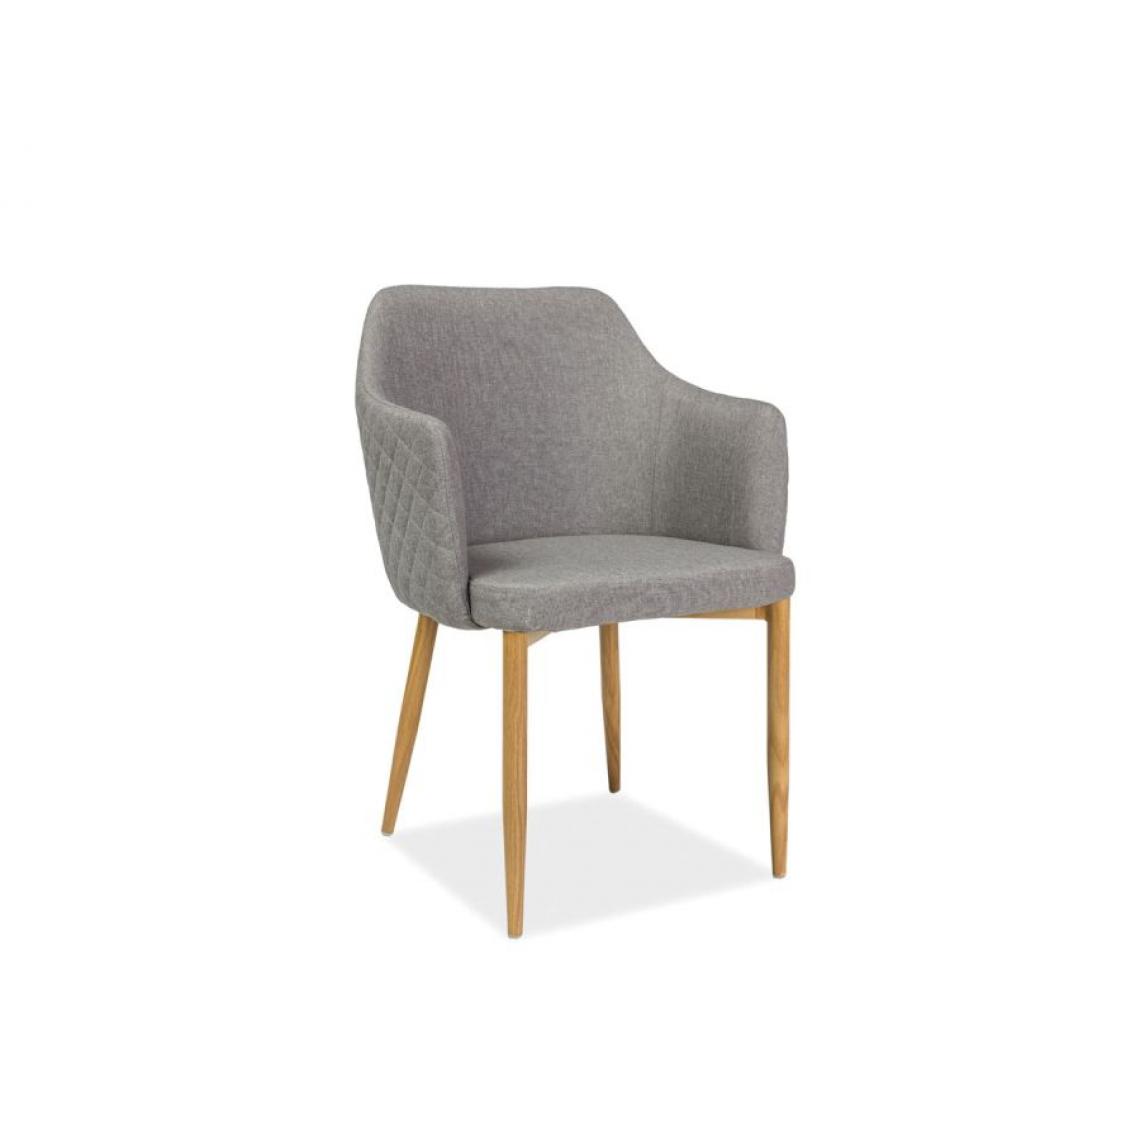 Hucoco - ASTOP | Chaise style scandinave bureau salle à manger | Dimensions: 84x46x46 cm | Revêtement en tissu | Chaise élégante - Gris - Chaises